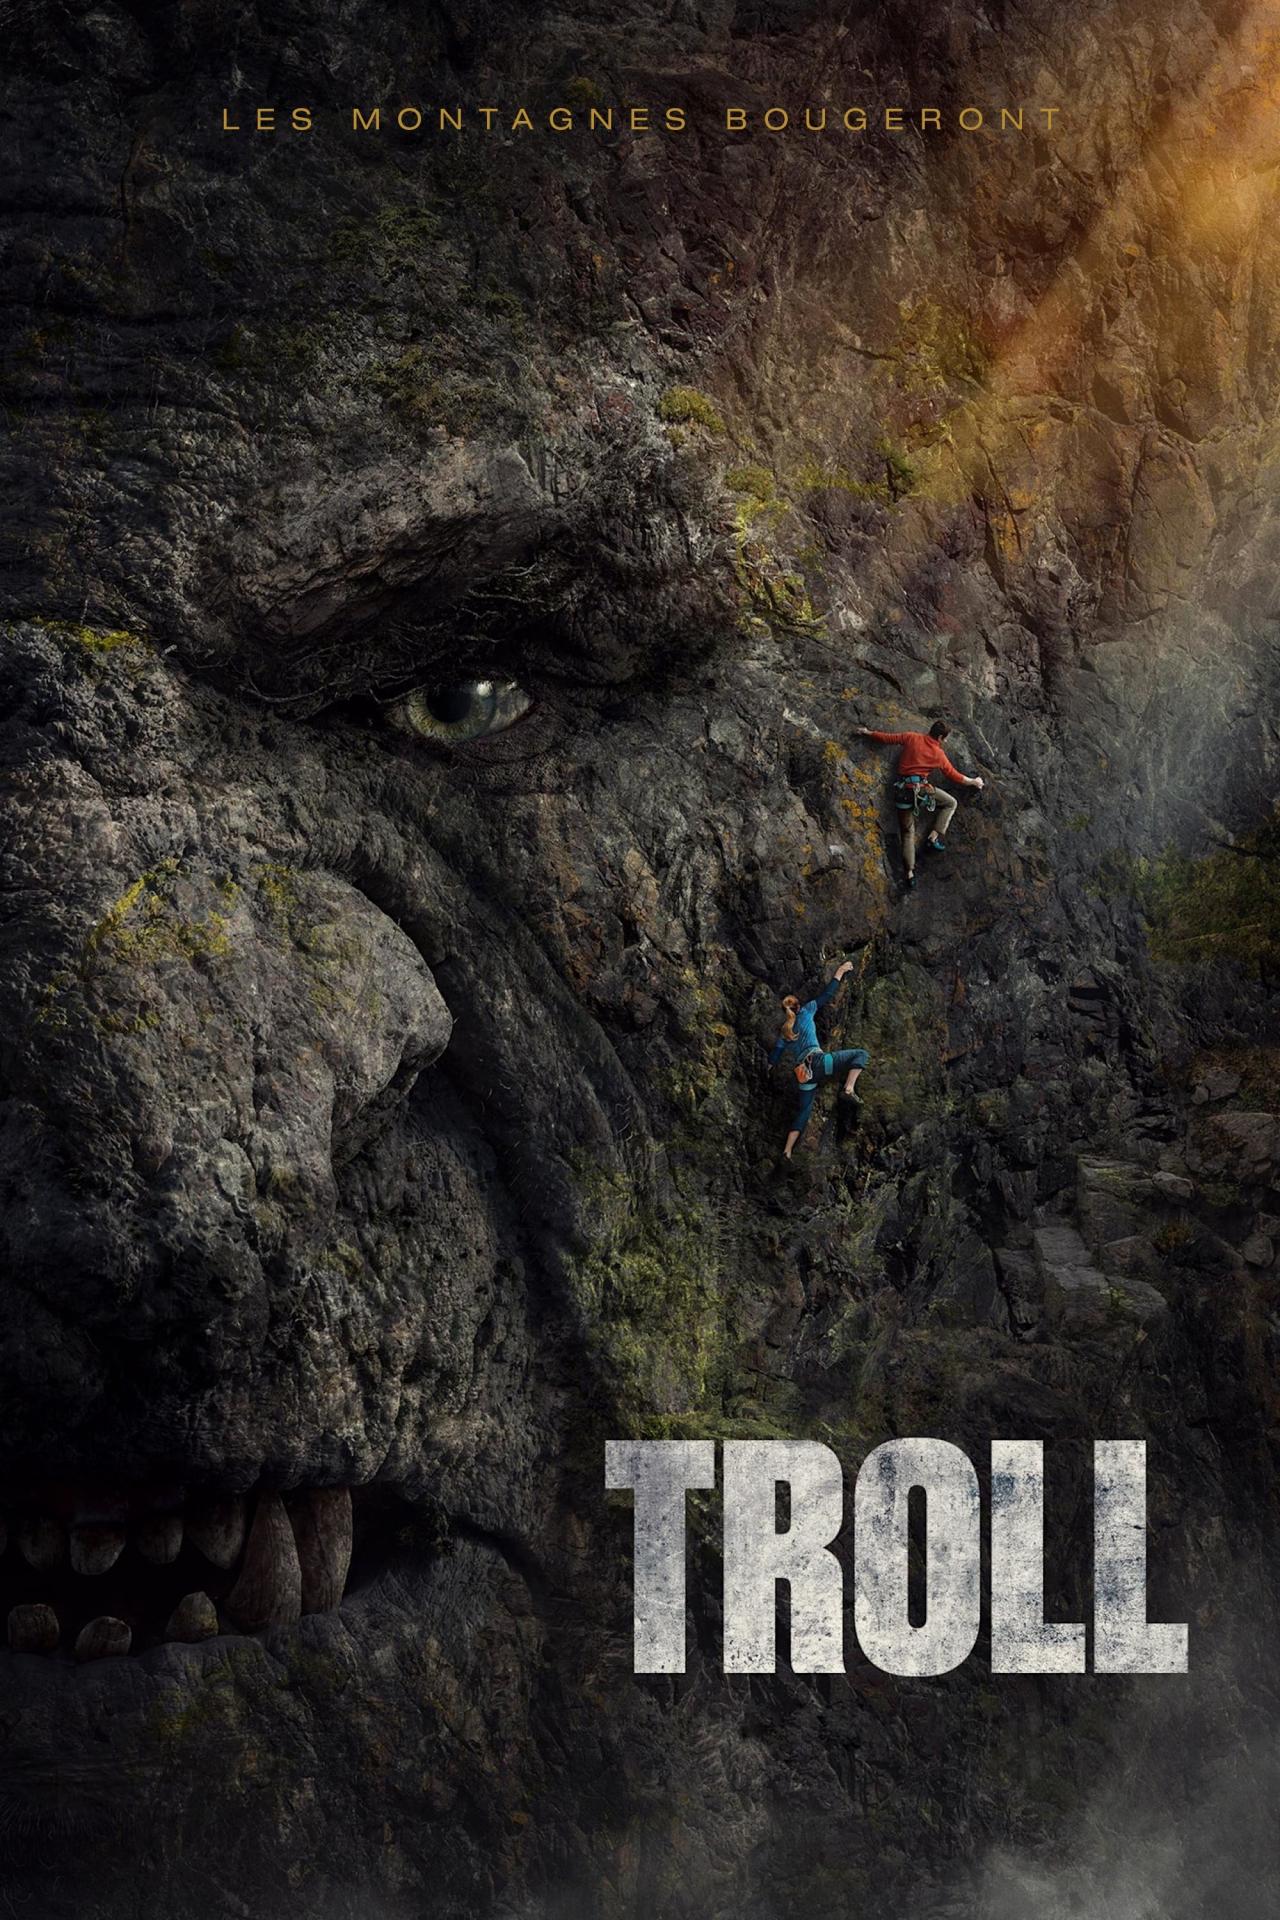 Affiche du film Troll